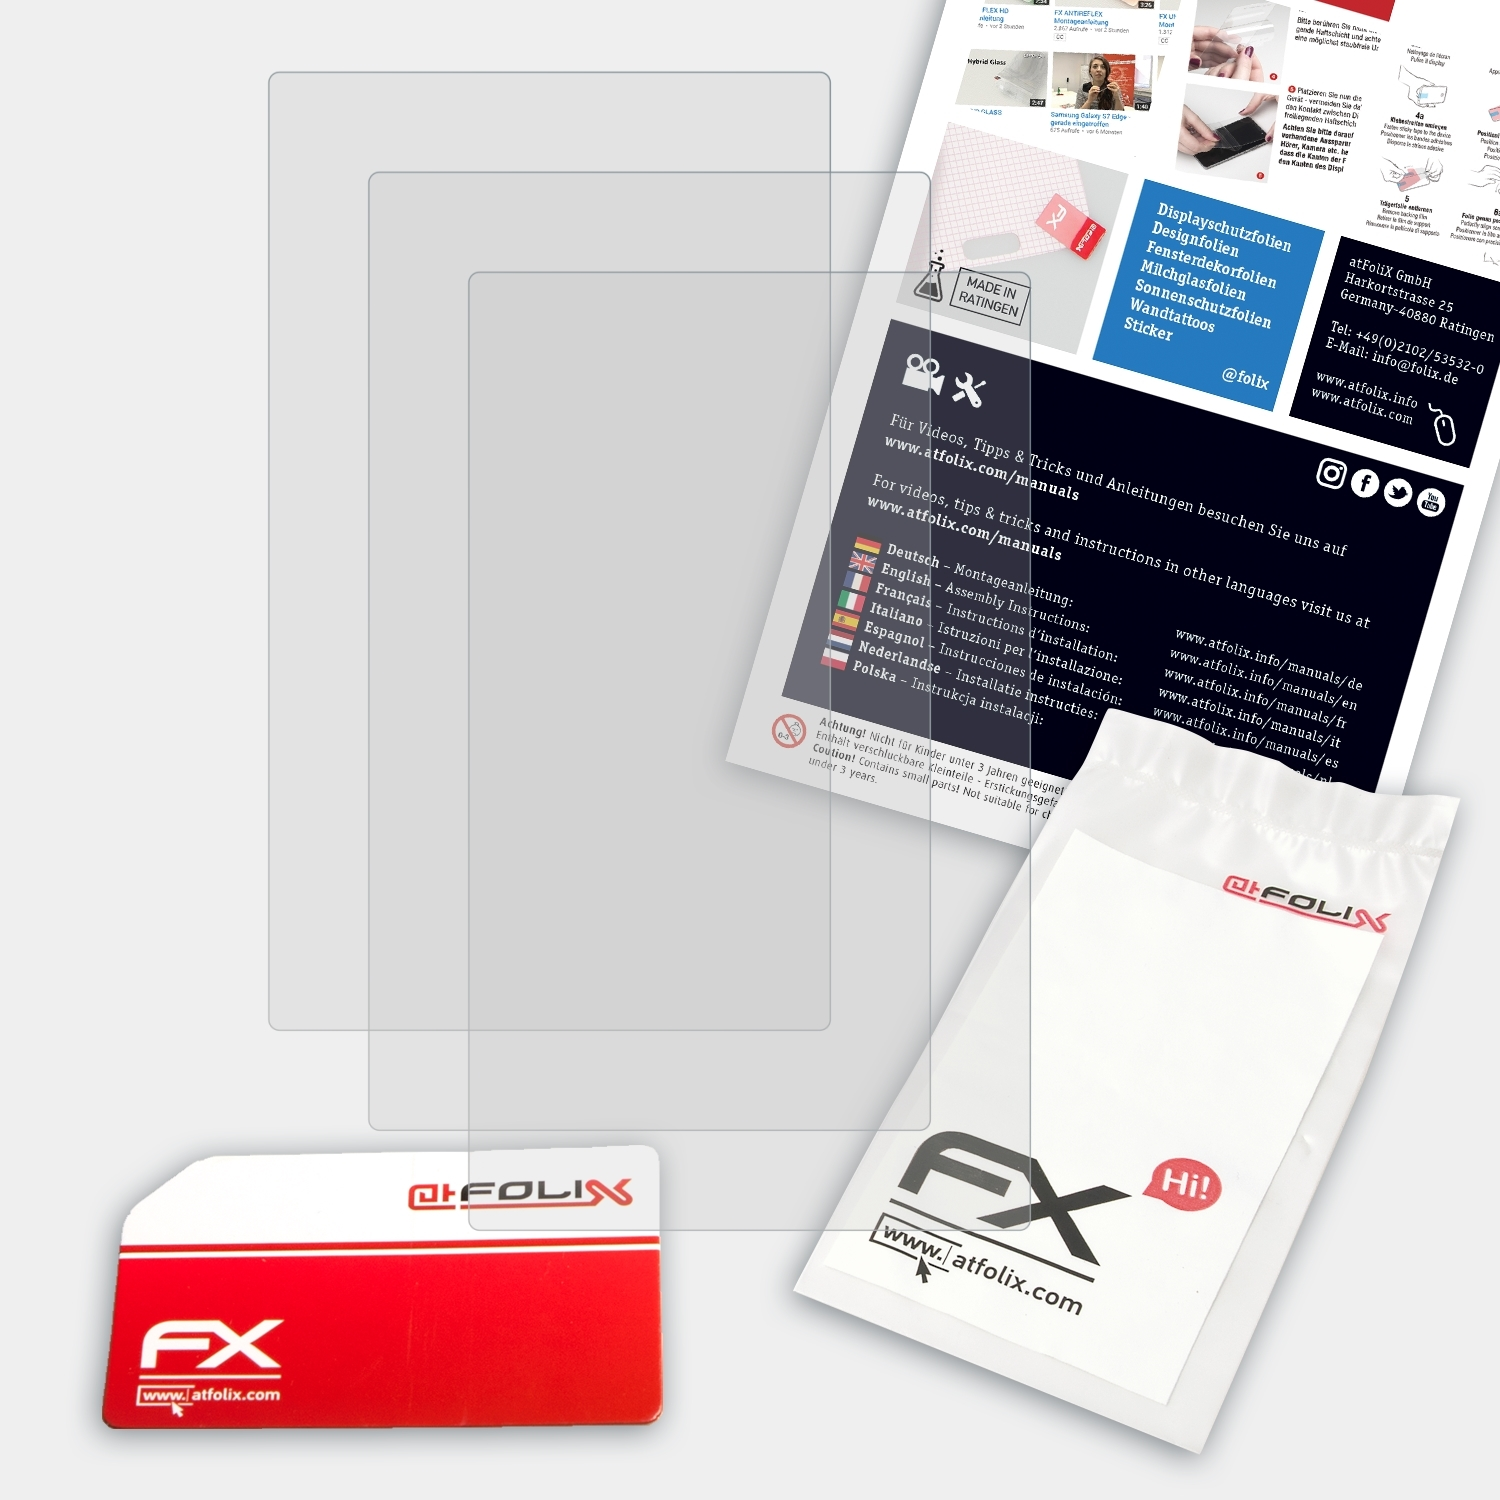 ATFOLIX 3x FX-Antireflex Displayschutz(für Onkyo PD-S10)